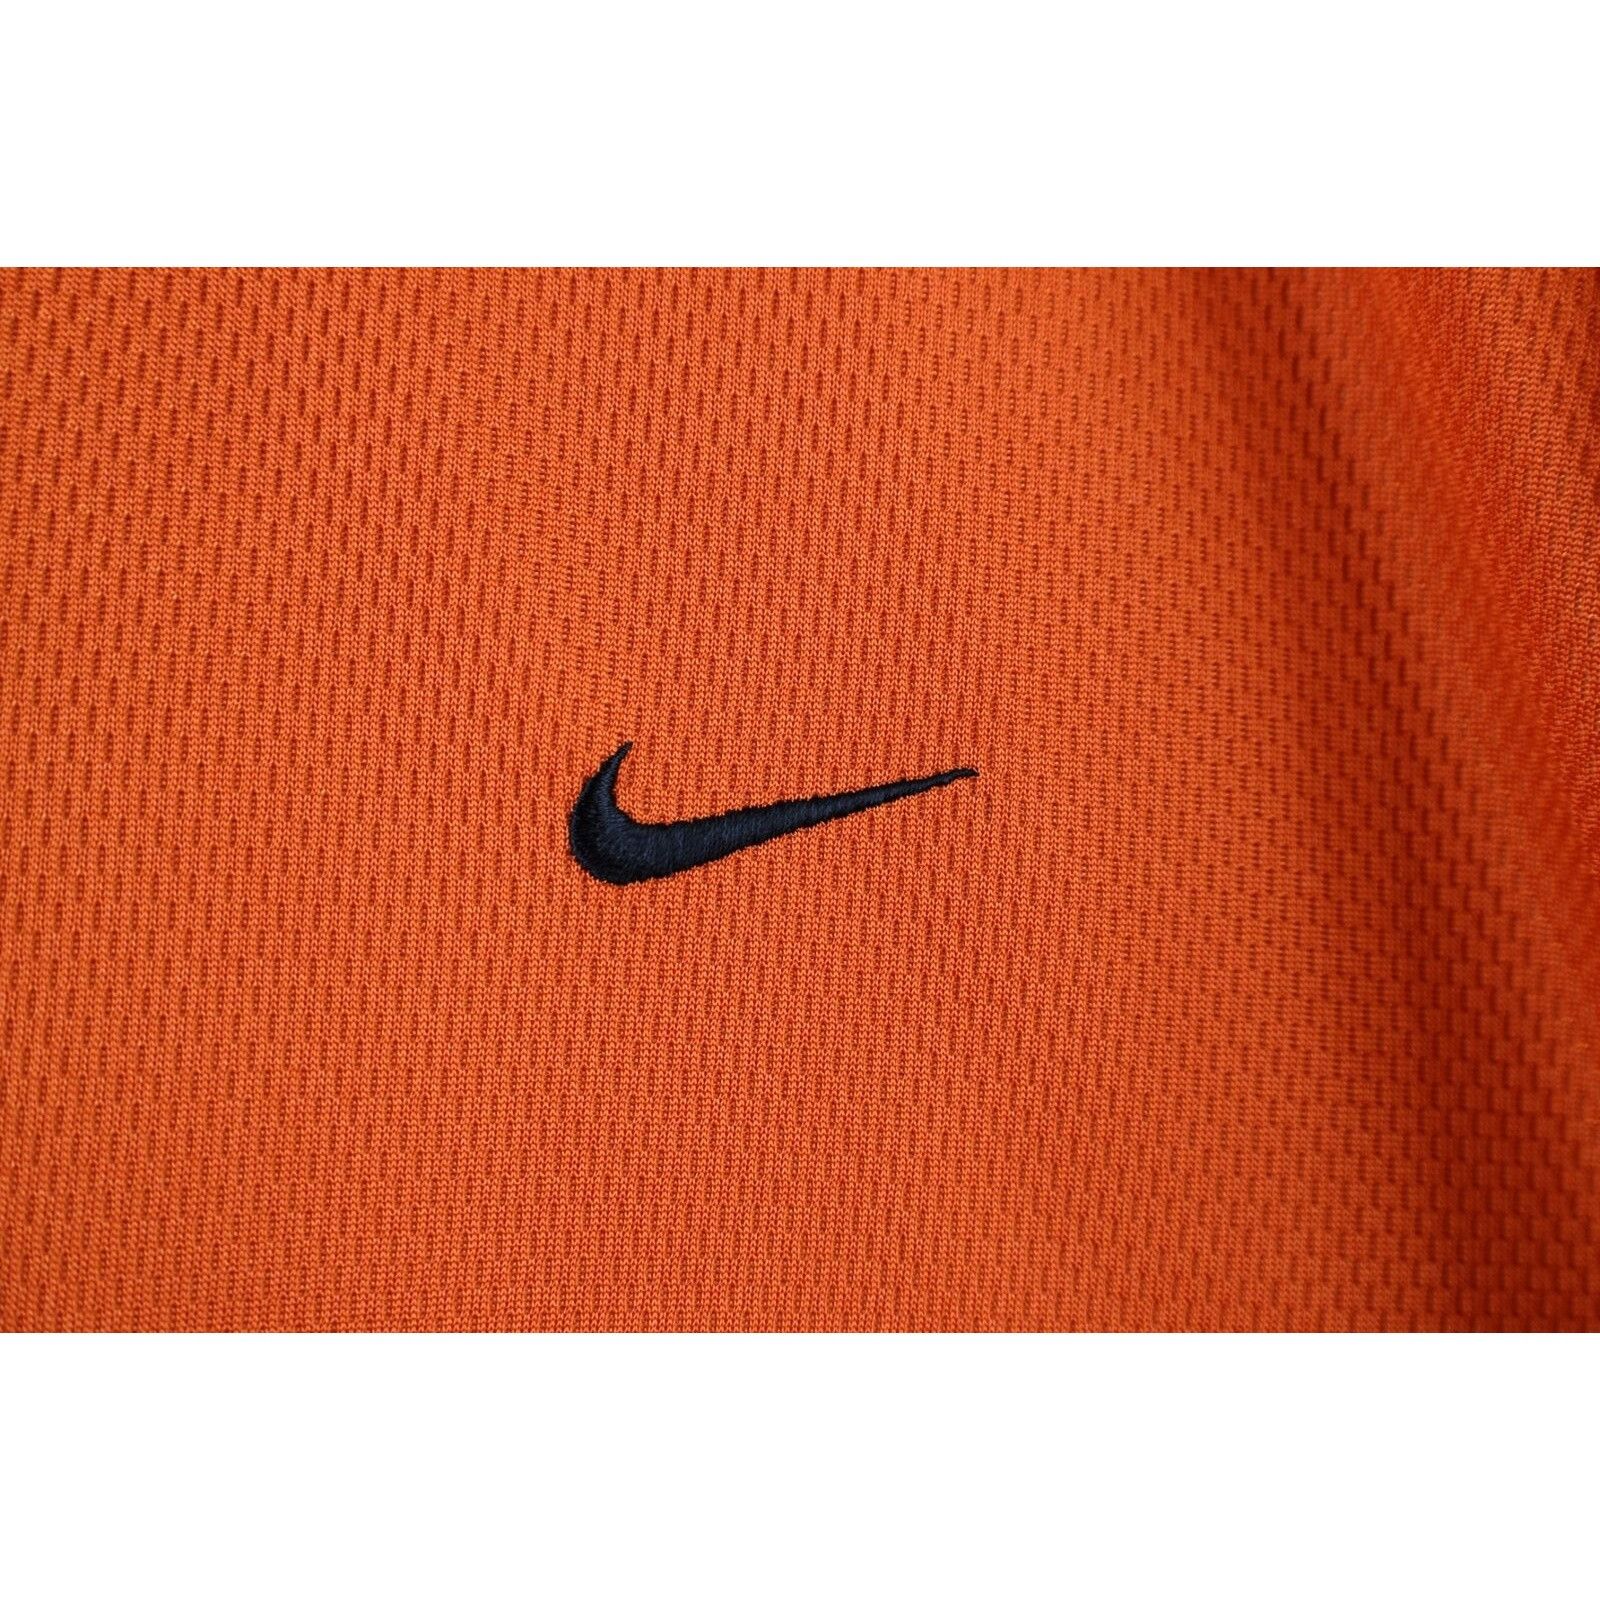 Nike Vintage Nike Travis Scott Mini Swoosh T-Shirt Size US XL / EU 56 / 4 - 5 Thumbnail